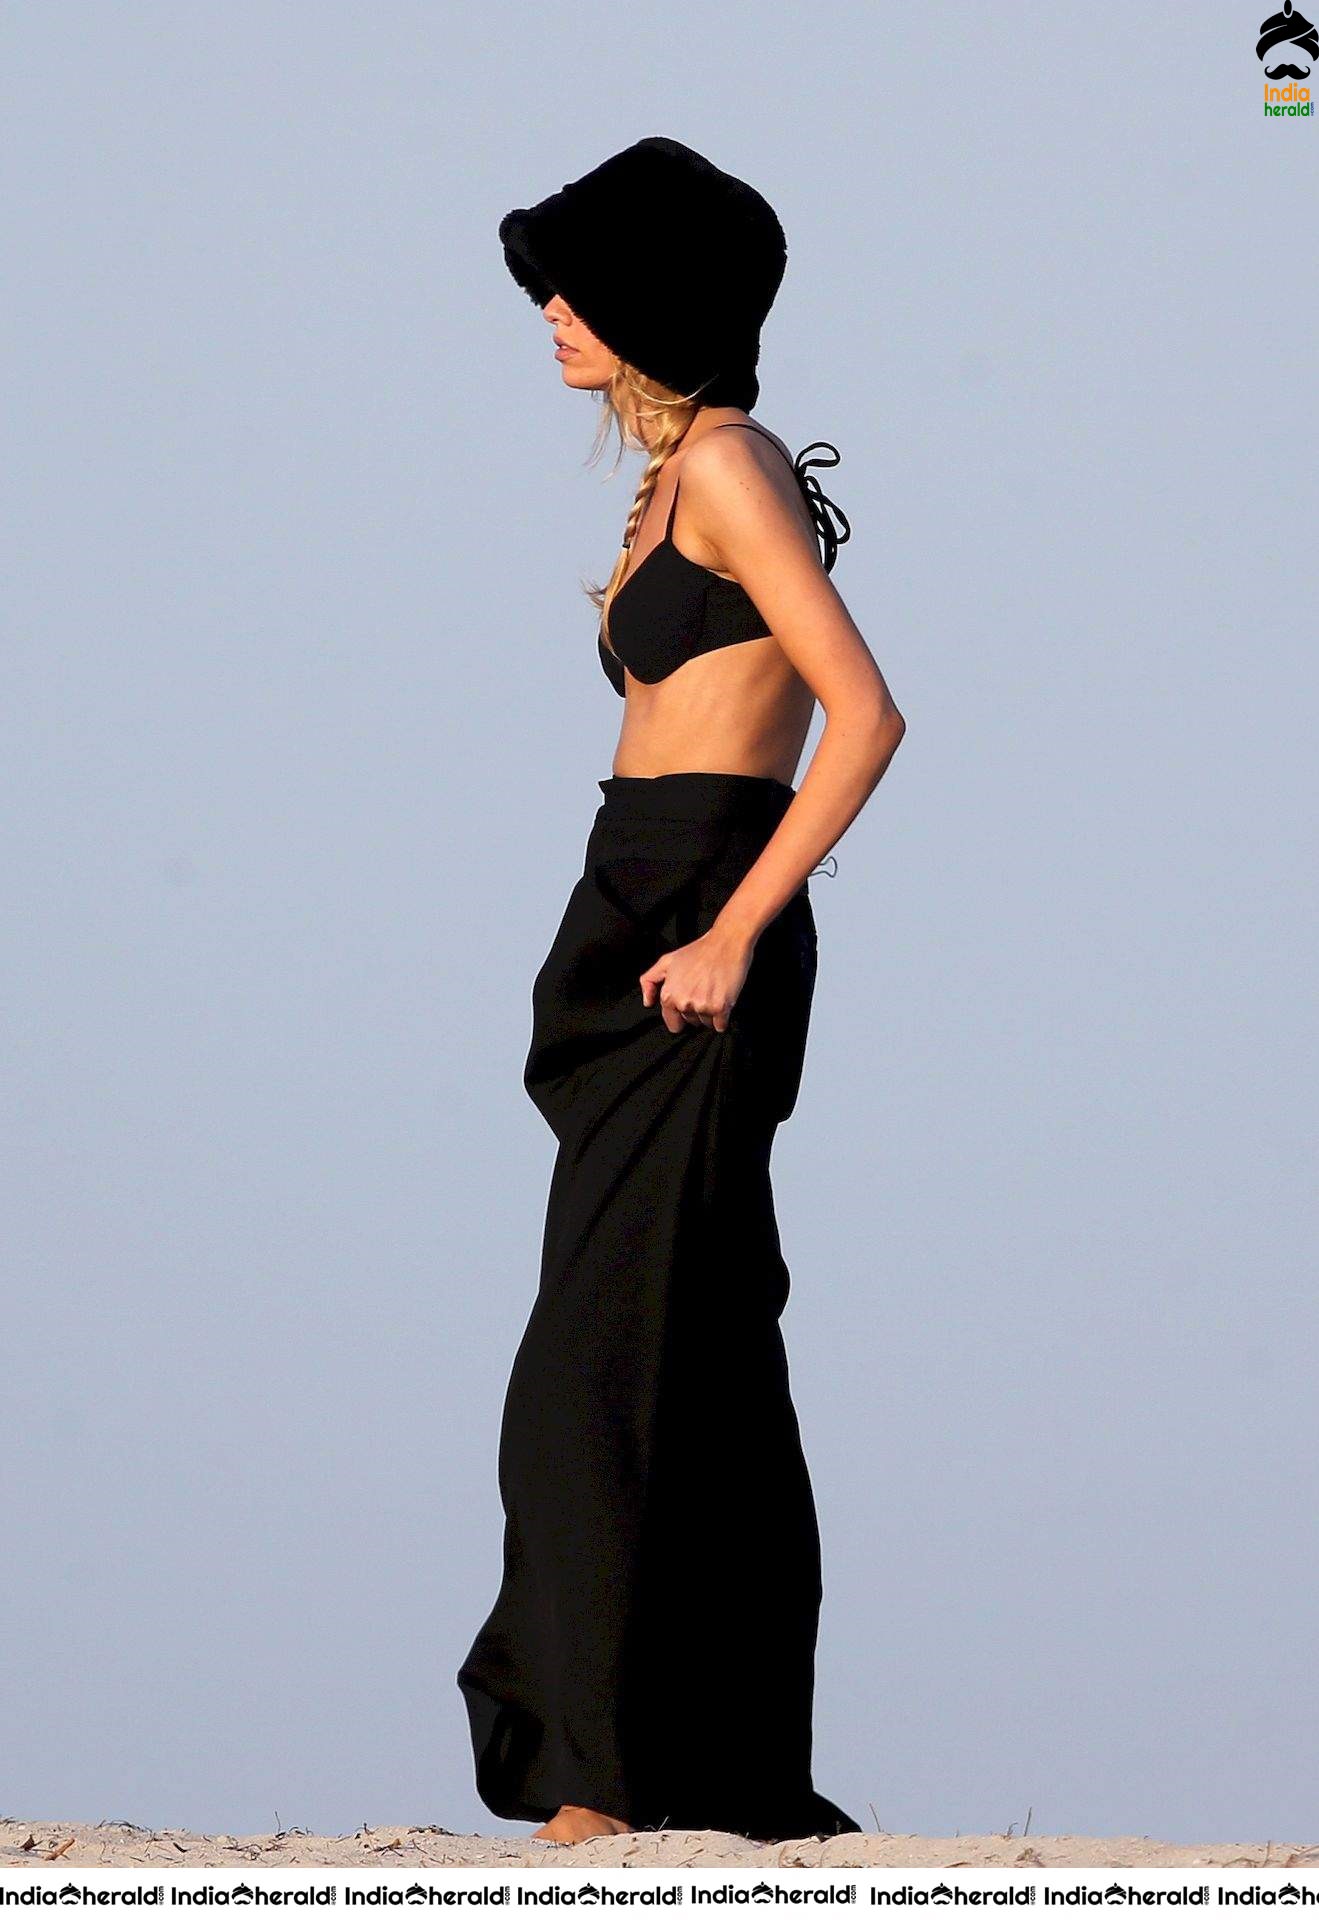 Stella Maxwell in Bikini at Miami Beach Set 2